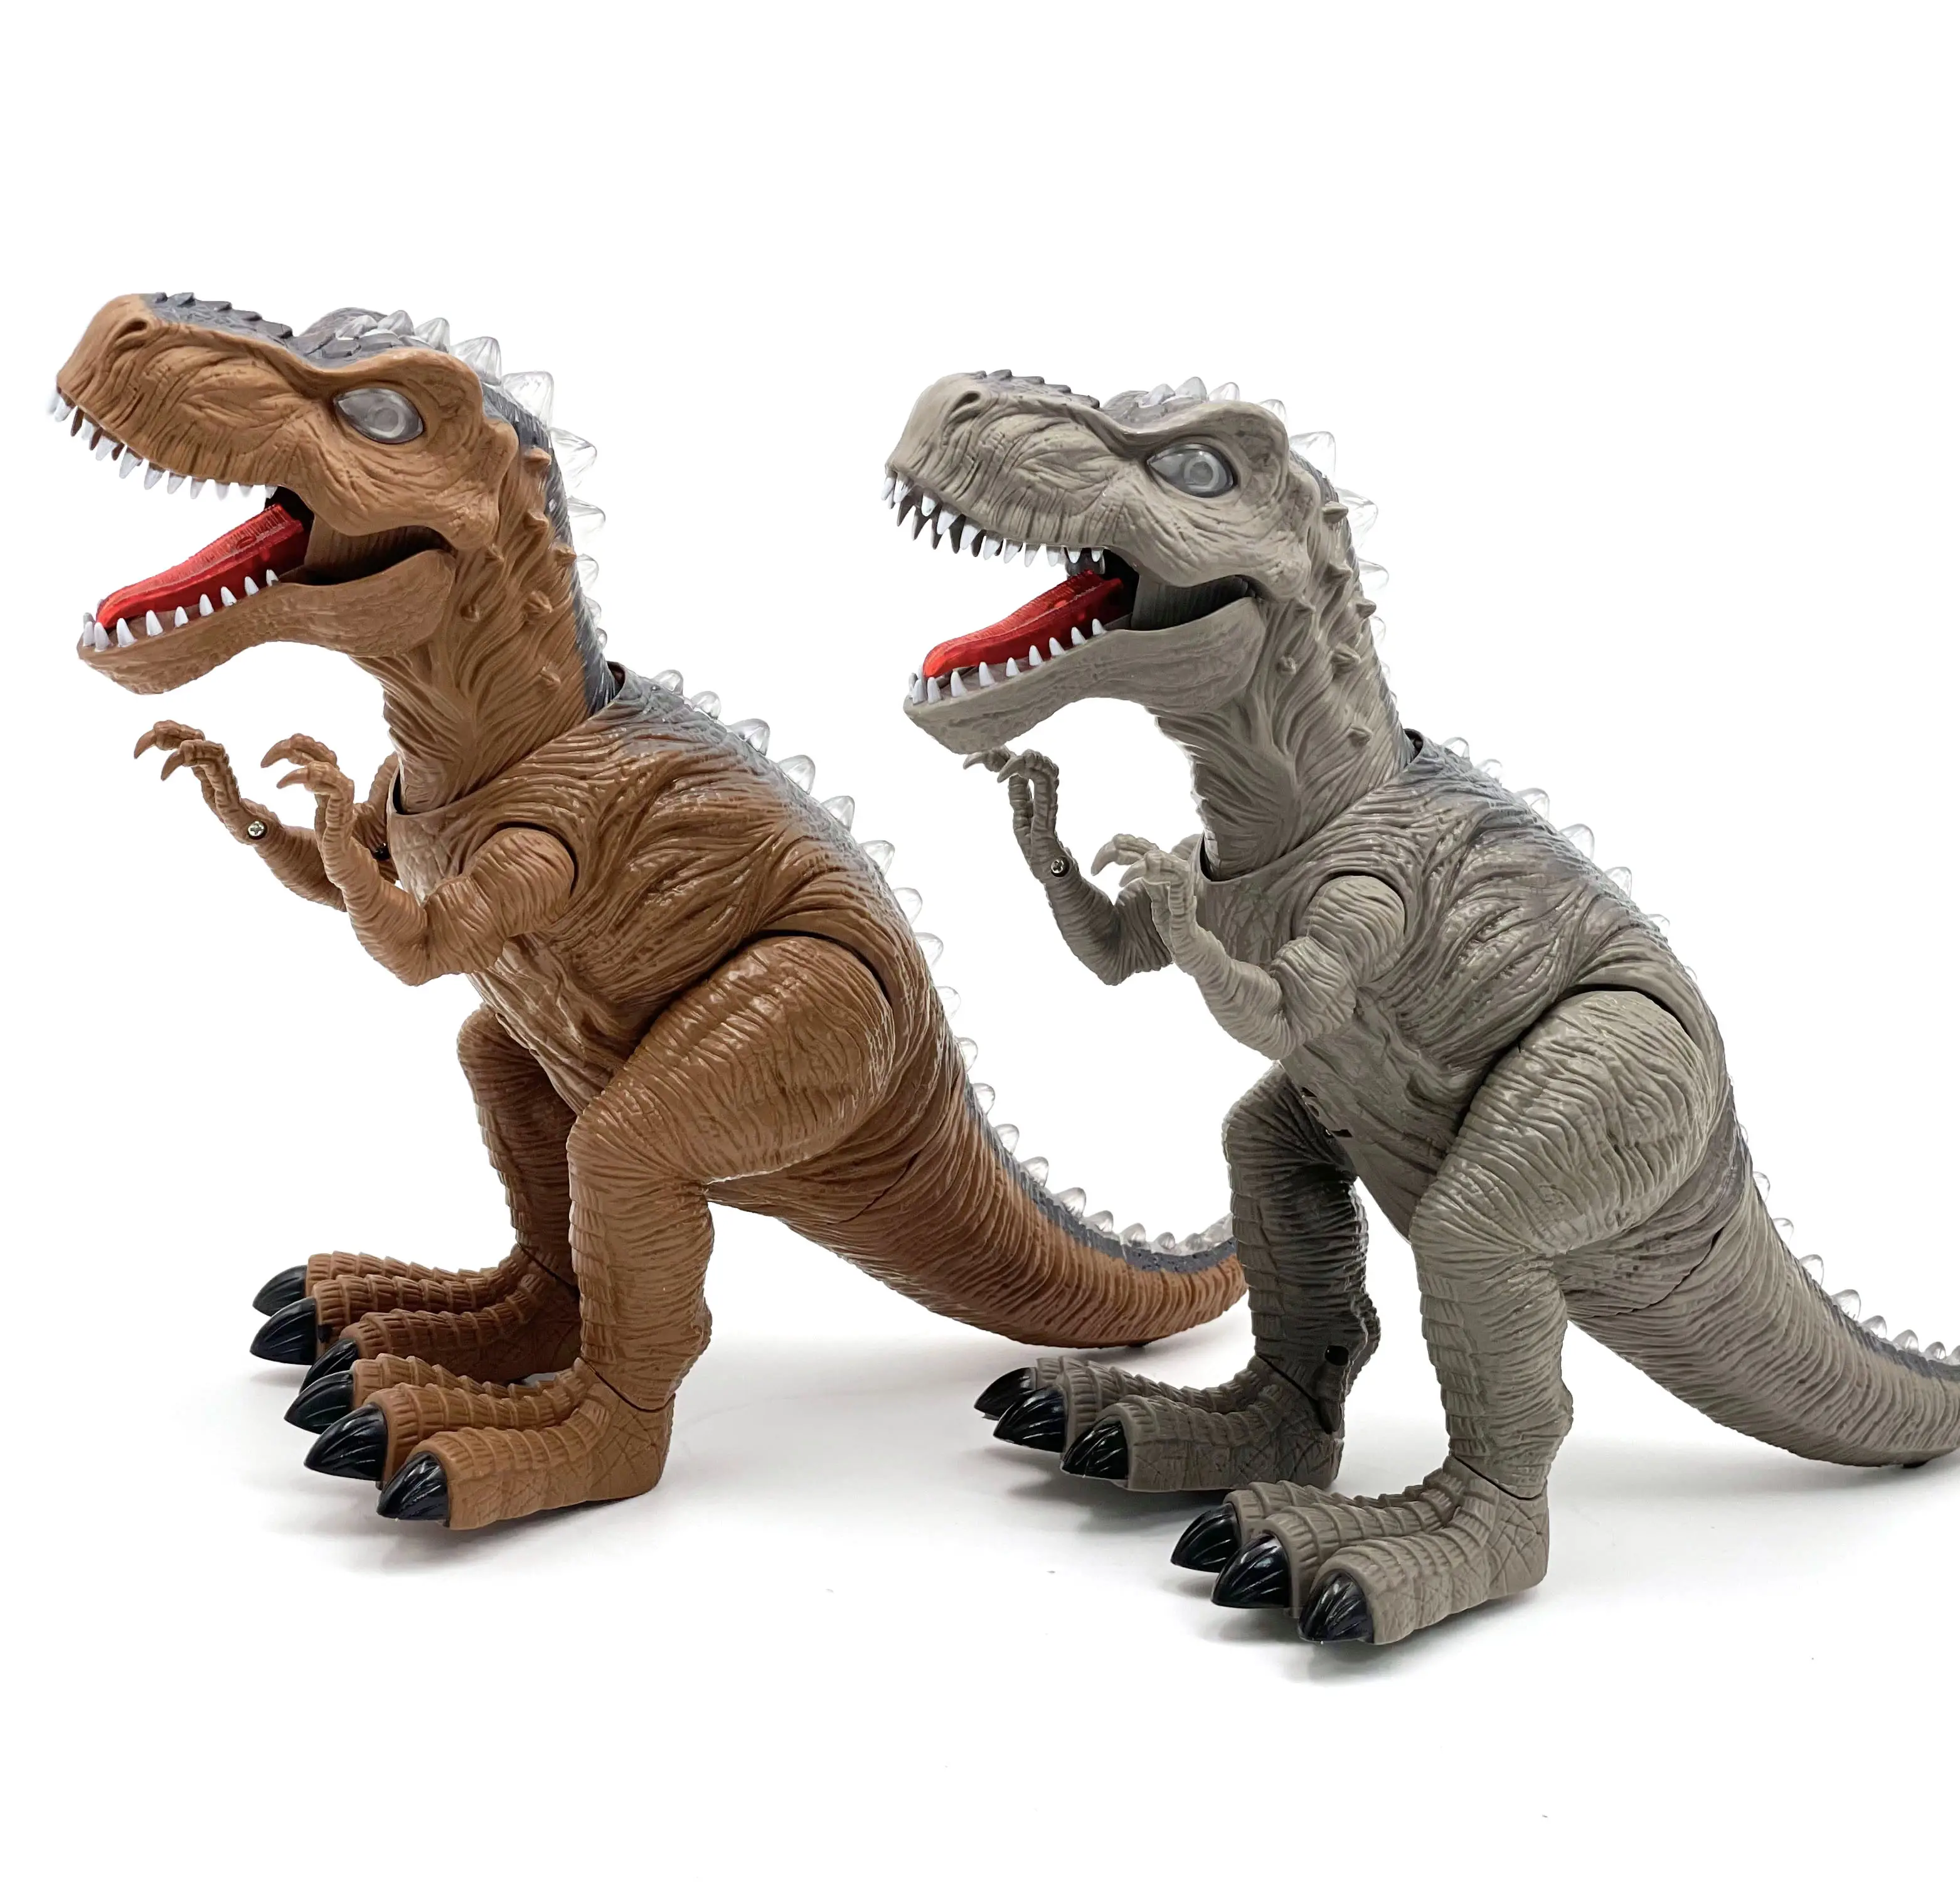 Juguete de dinosaurio que camina con luz, simulación de Tiranosaurio Rex, juguete de plástico con sonido